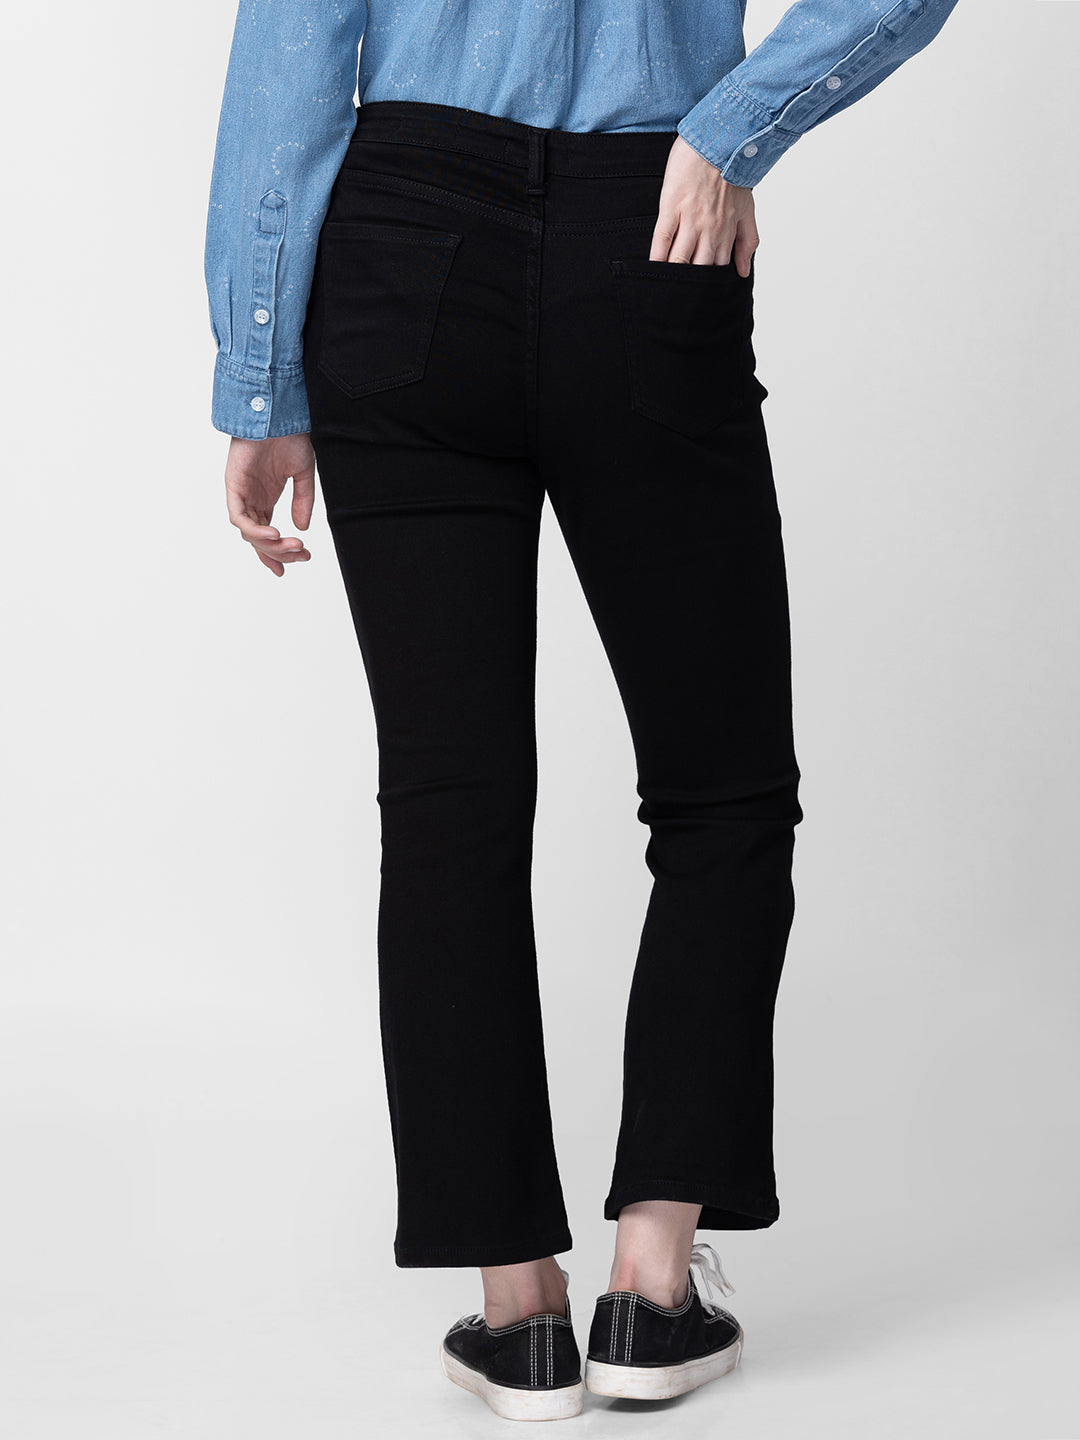 Spykar Women Black Cotton Bootcut Fit Ankle Length Jeans (Elissa)